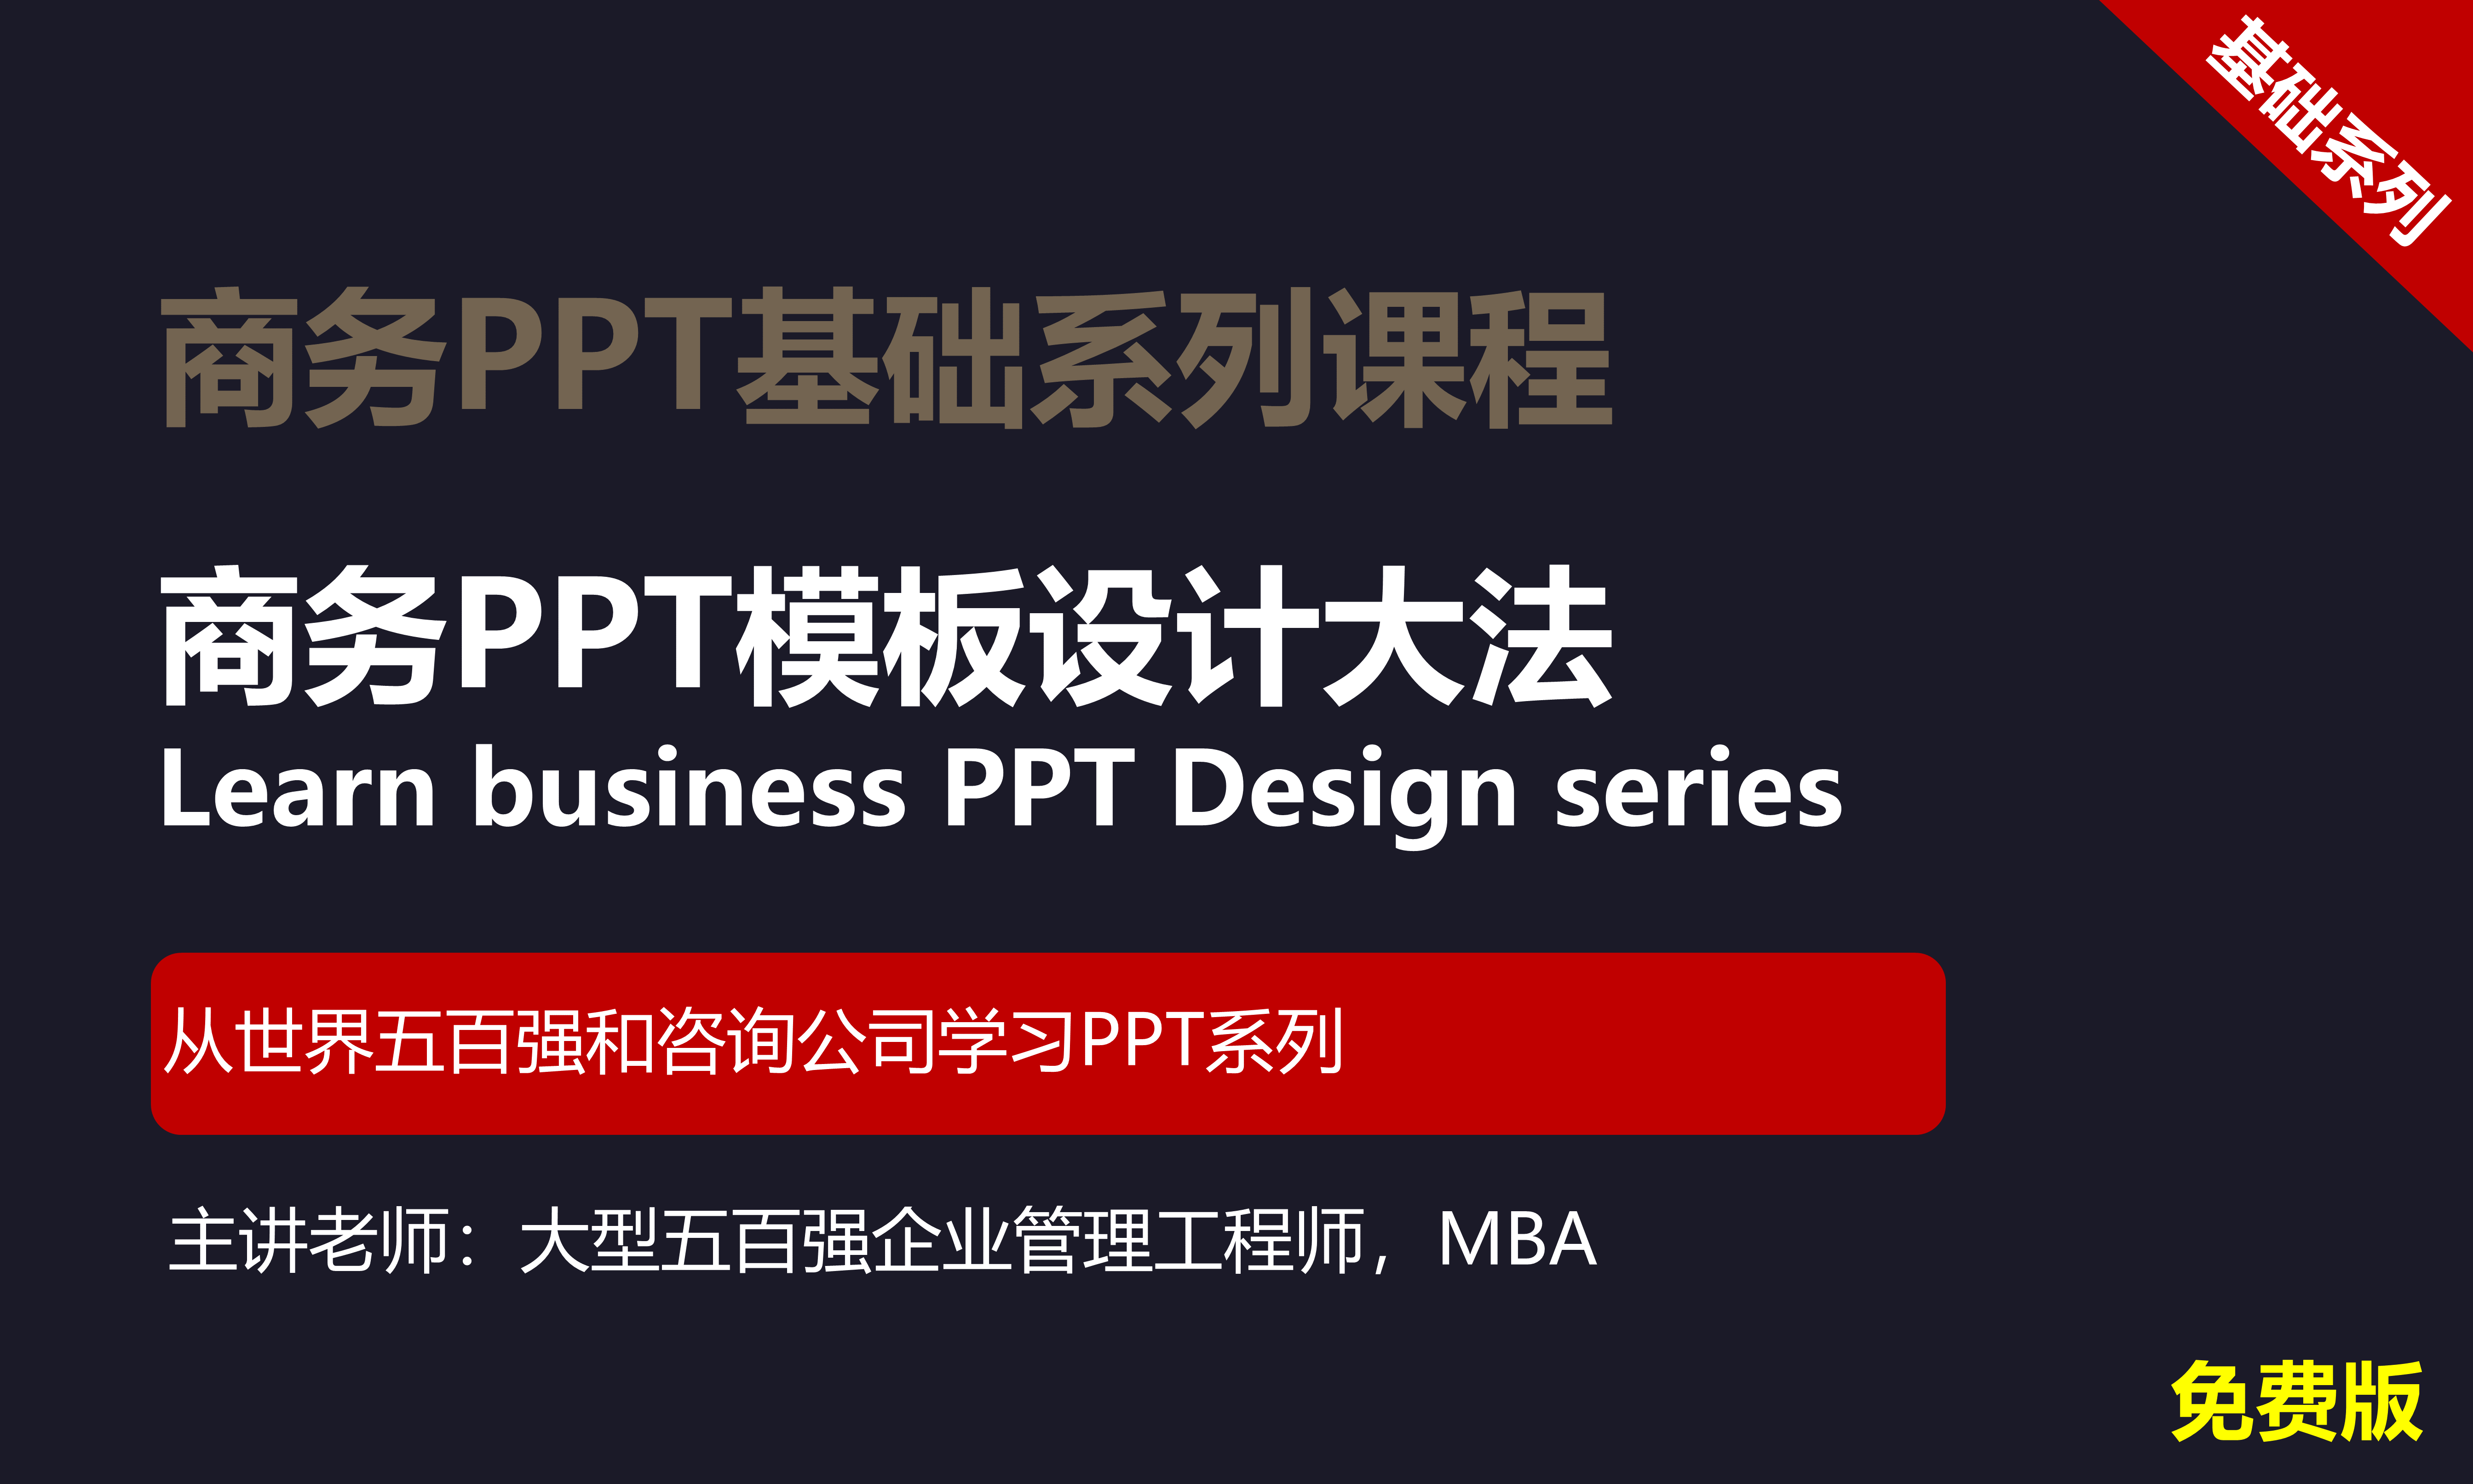 【司马懿】商务PPT设计基础篇04【模板设计】免费版